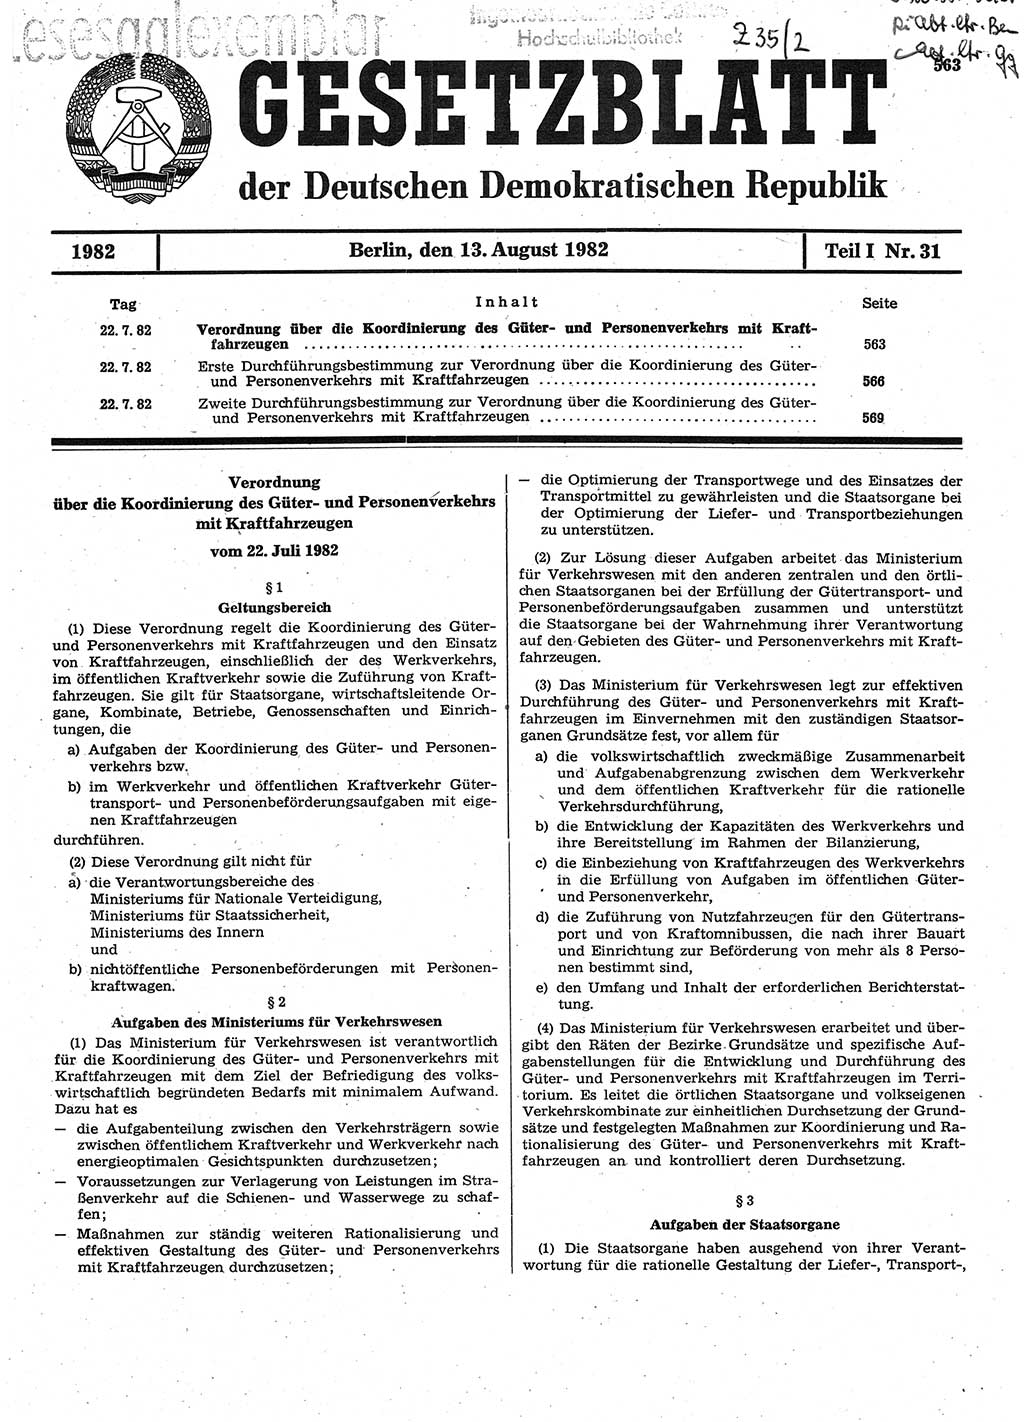 Gesetzblatt (GBl.) der Deutschen Demokratischen Republik (DDR) Teil Ⅰ 1982, Seite 563 (GBl. DDR Ⅰ 1982, S. 563)